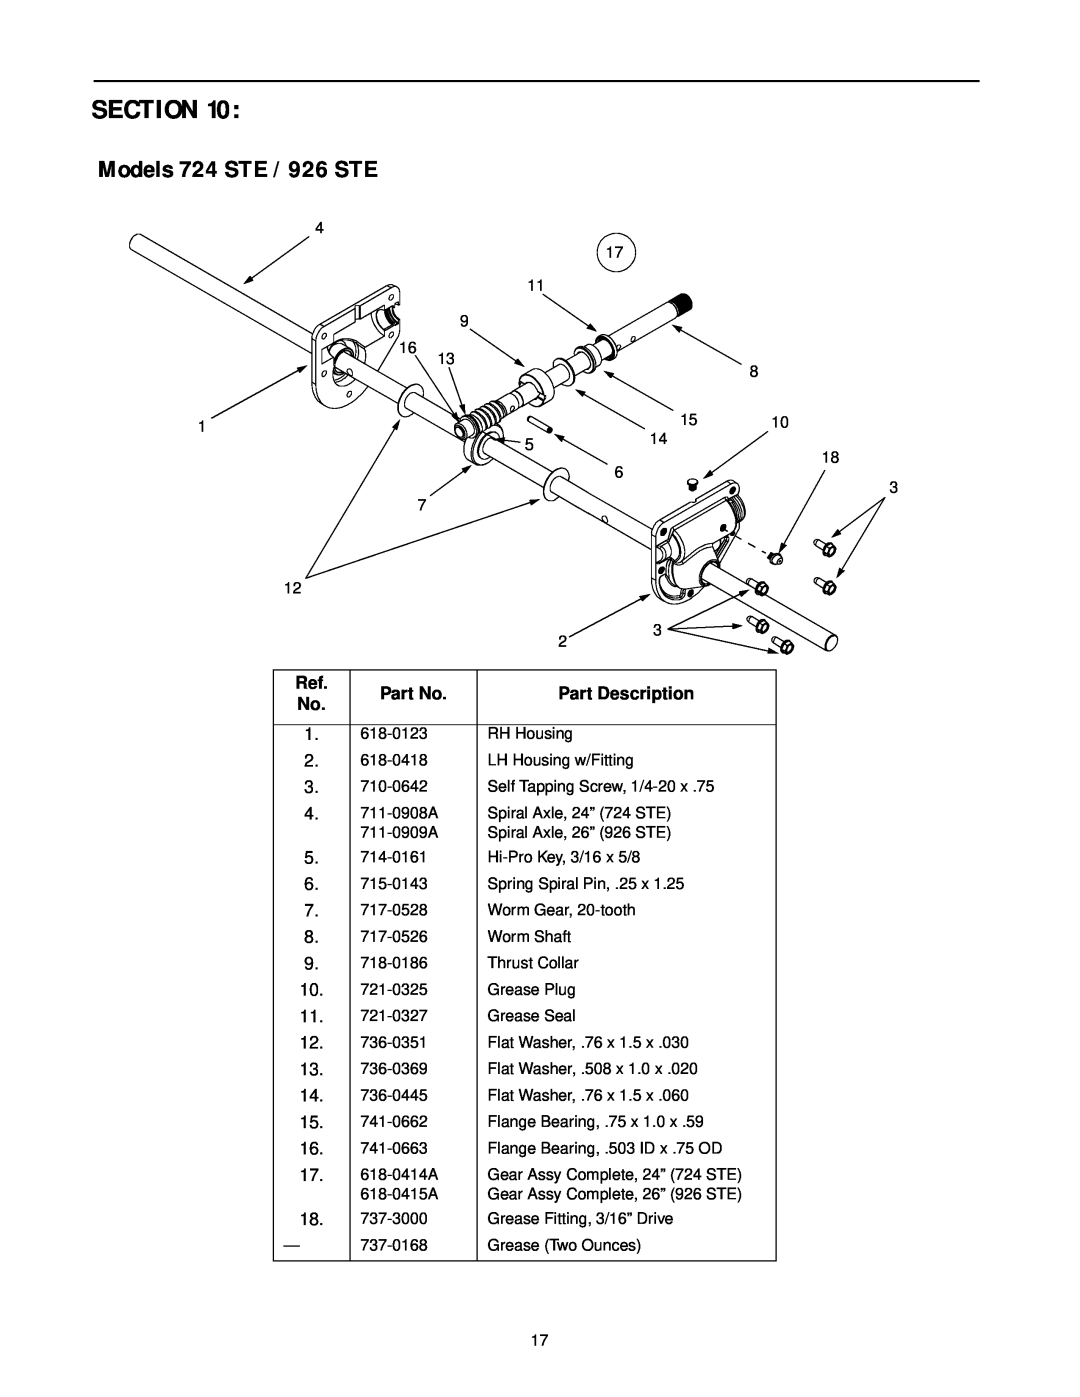 Cub Cadet manual Section, Models 724 STE / 926 STE, Part Description 